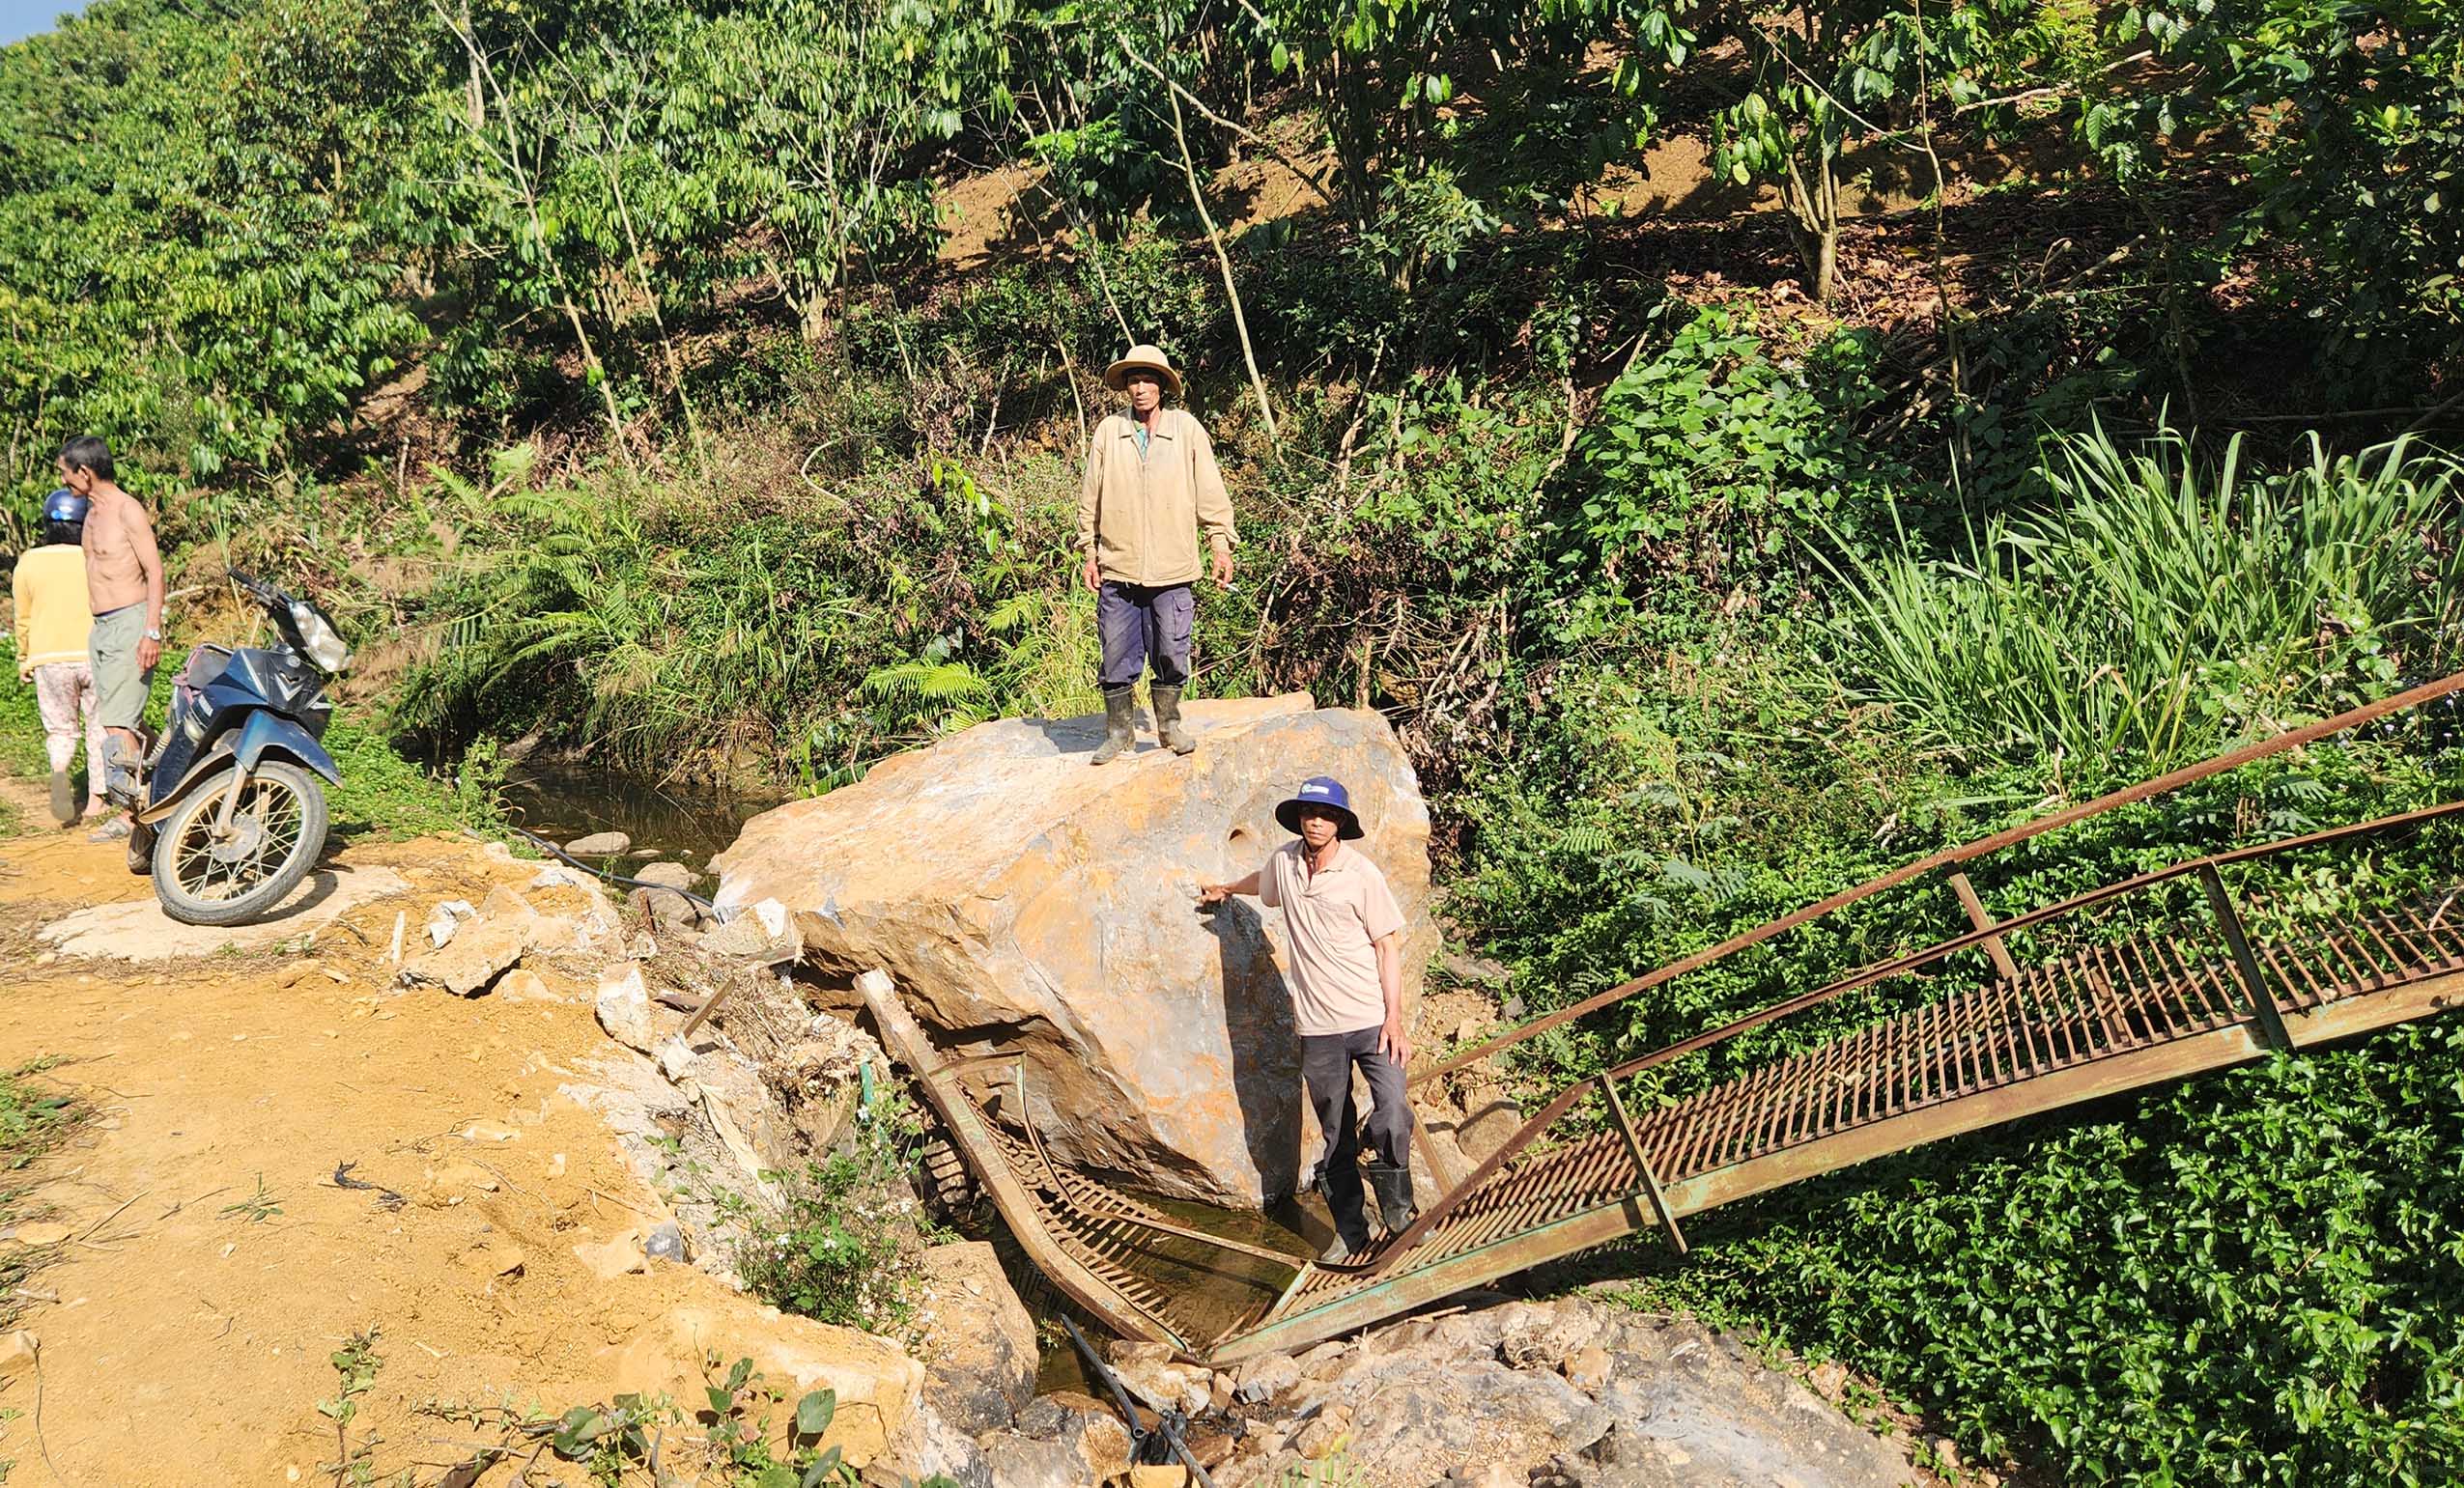 Lâm Đồng: Mỏ đá nổ mìn làm sập chòi, hư hại cây trồng của người dân